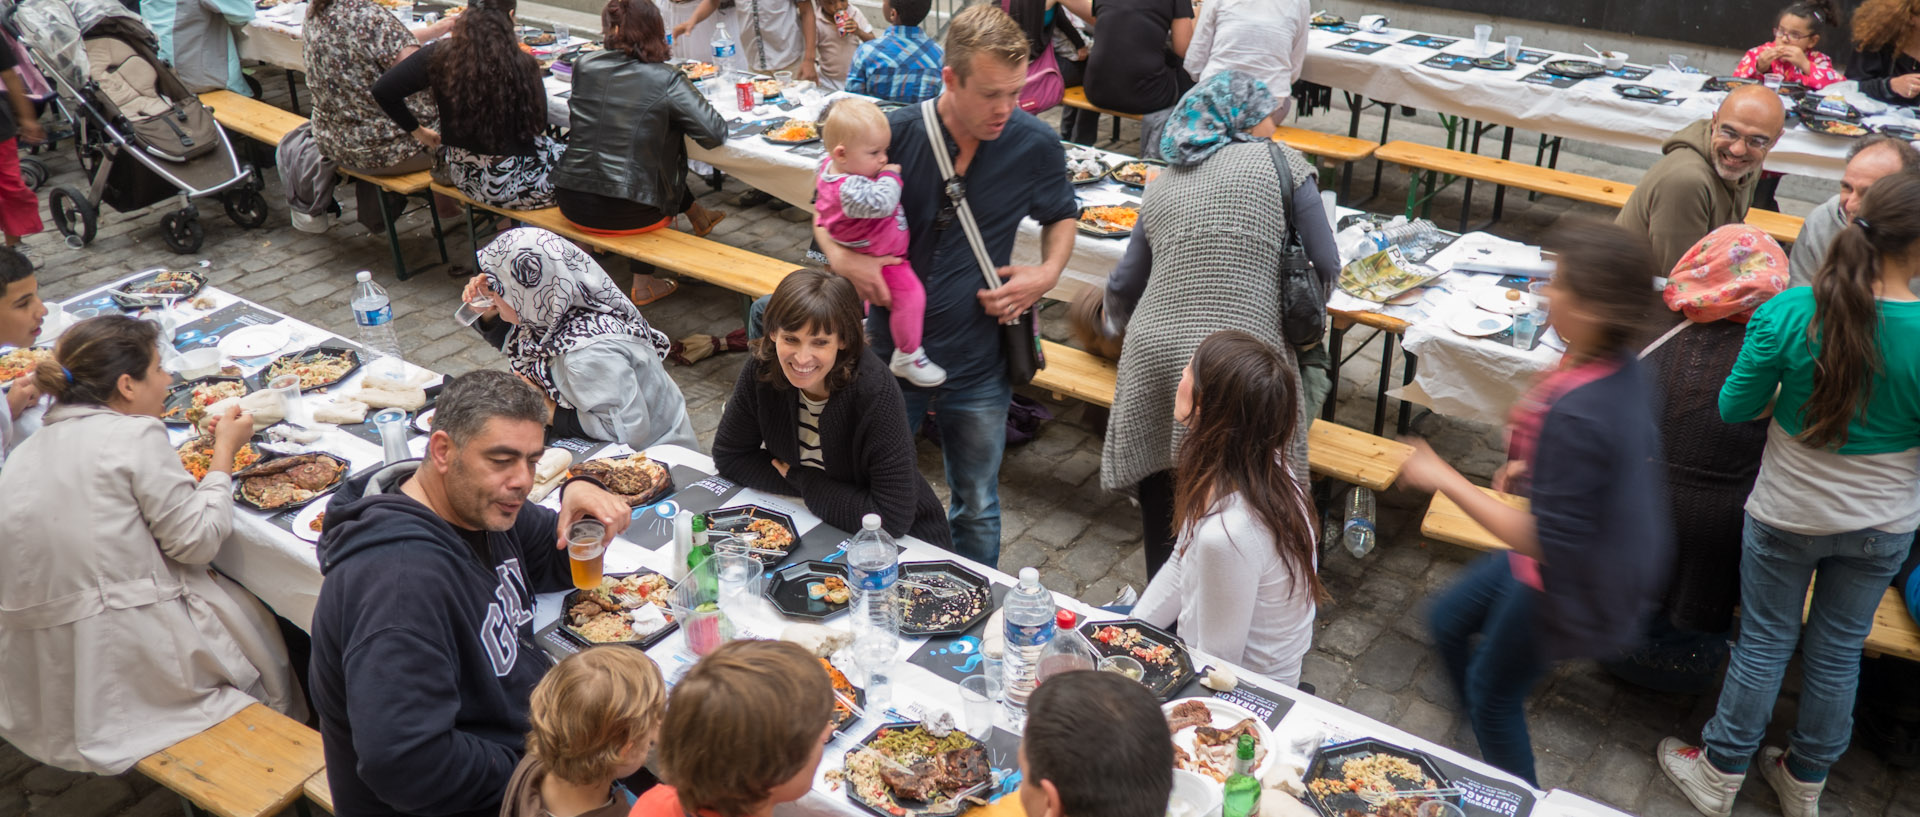 Le grand dîner à la Condition publique, dans le cadre du festival Pile au rendez-vous, à Roubaix.